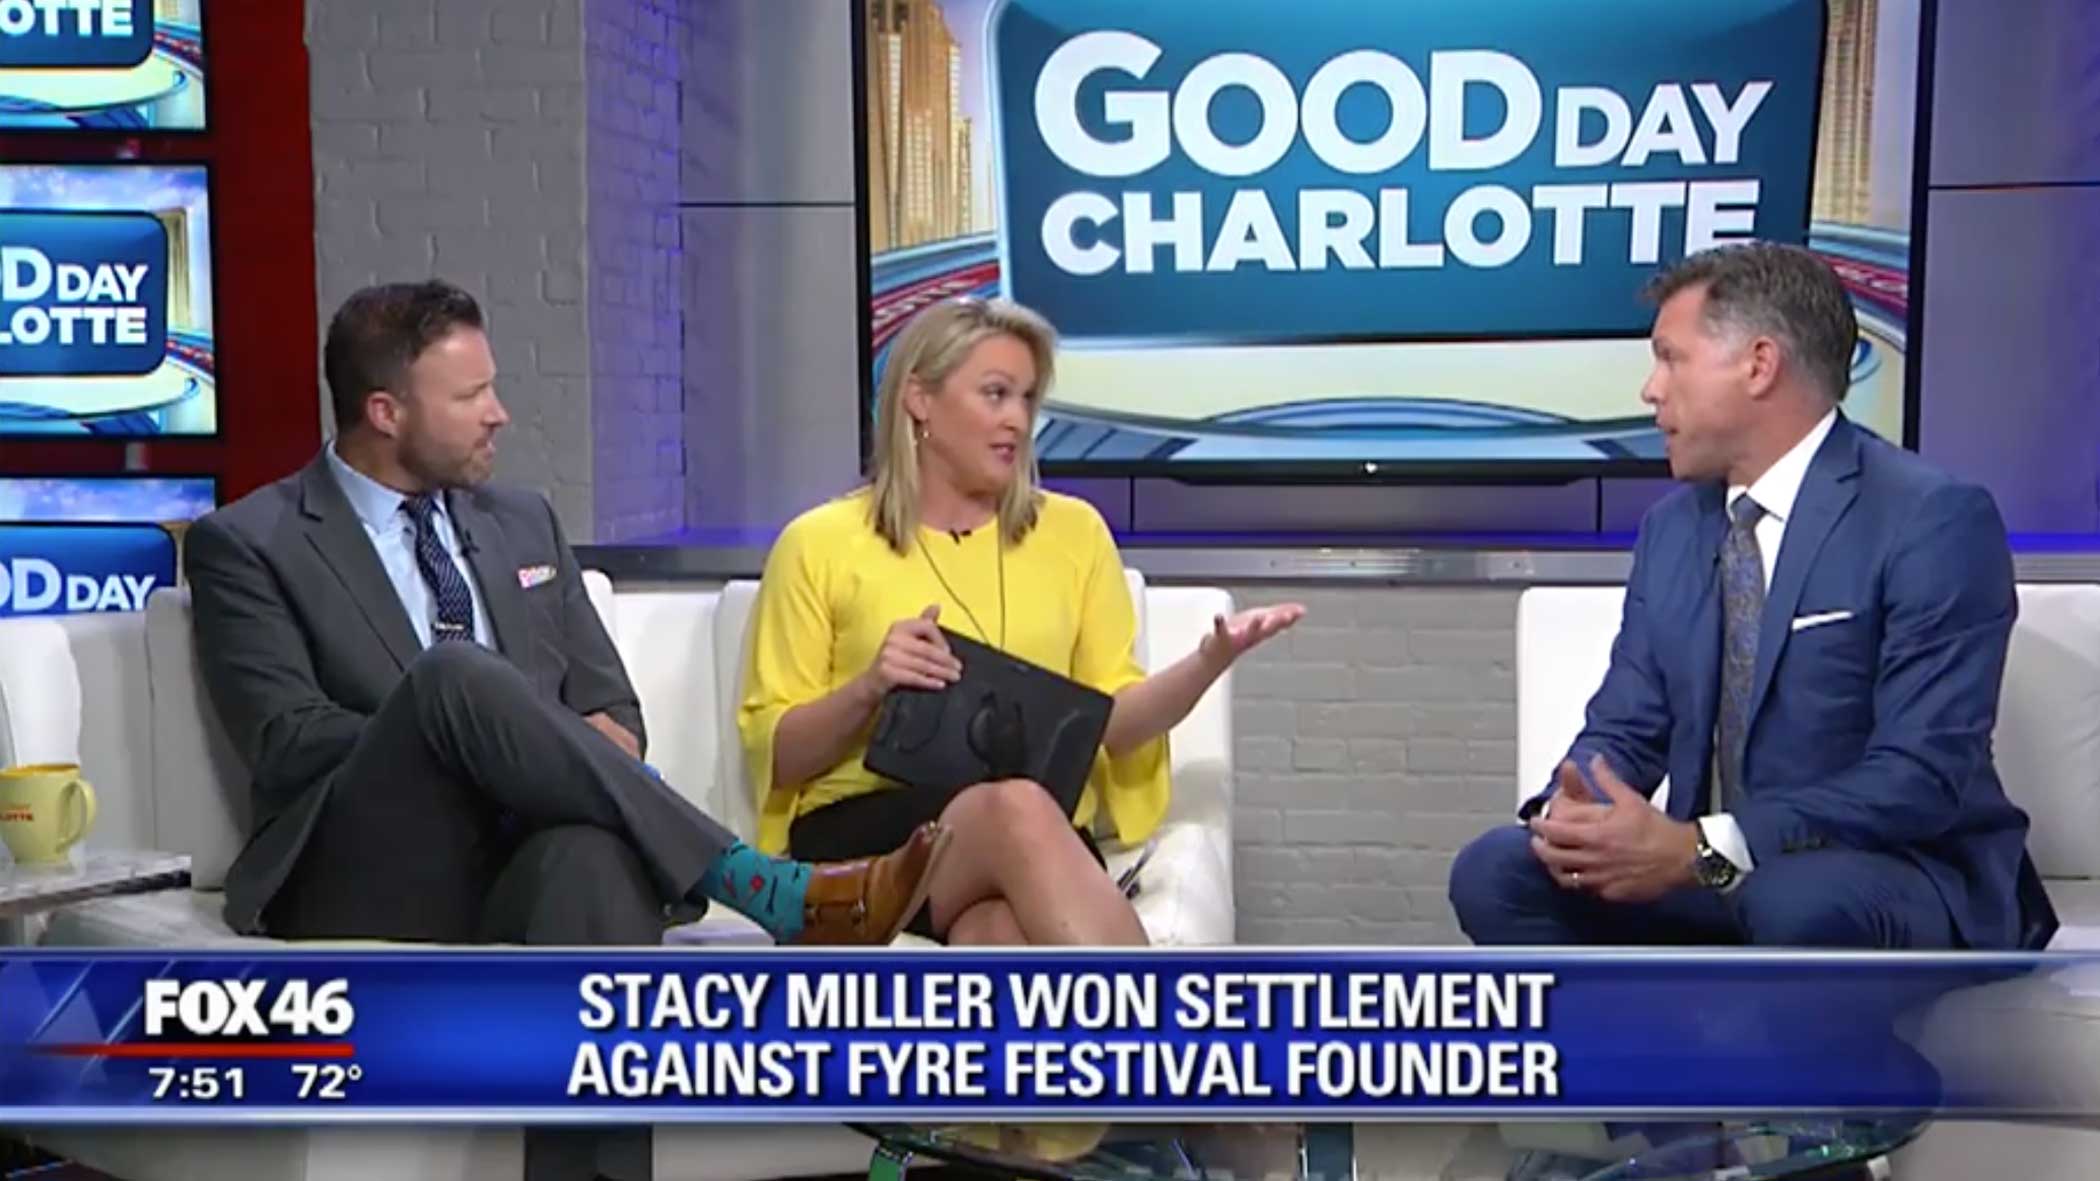 Stacy Miller on Fox 46 about winning settlement against Fyre Festival founder